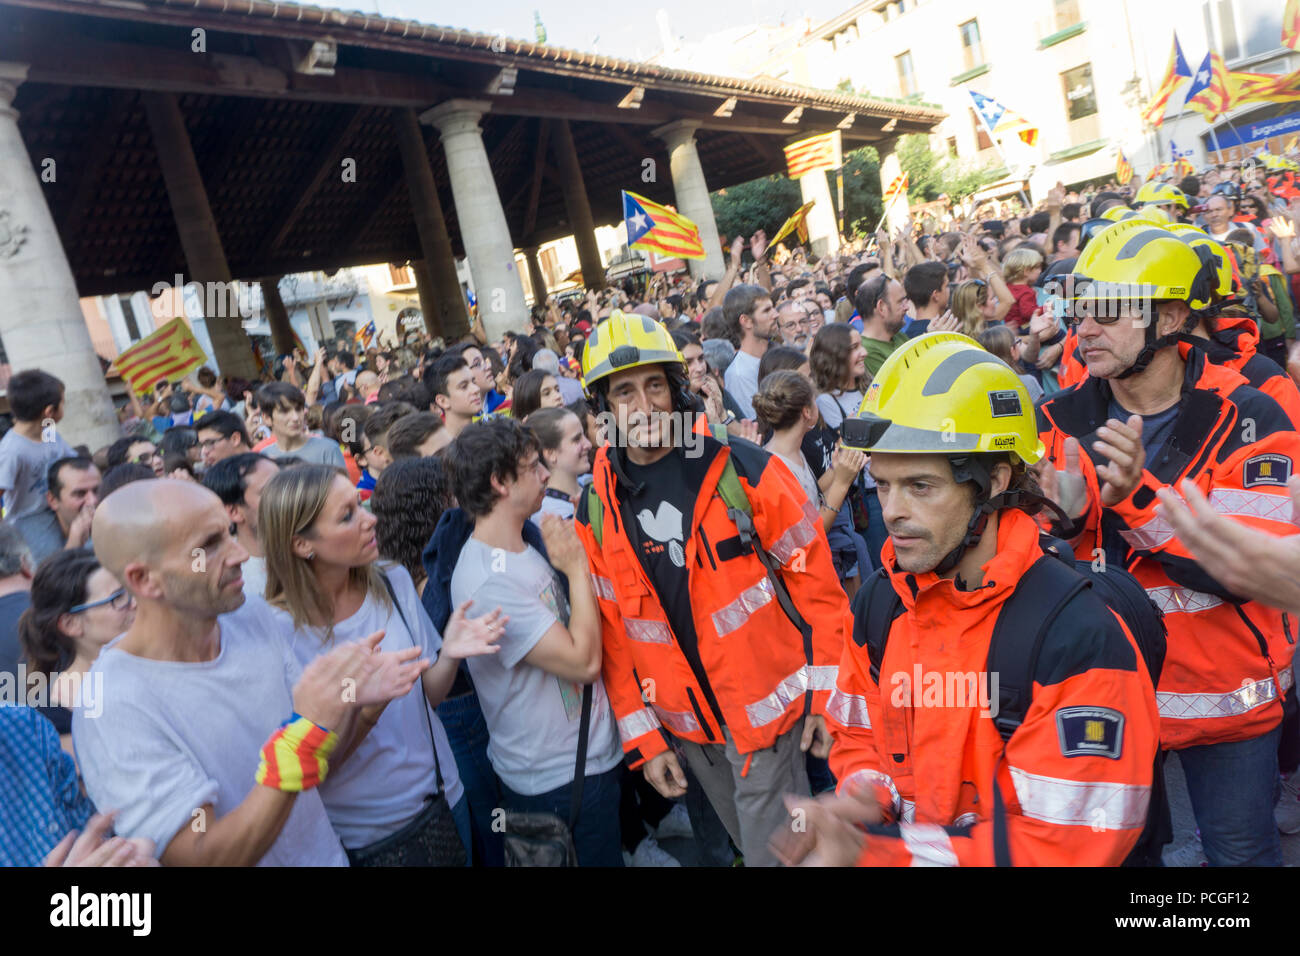 Granollers, Katalonien, Spanien, 3. Oktober 2017: ruhigen Menschen und firemfighters im Protest gegen die spanische Polizei Intervention am 1. Oktober in catalon Stockfoto